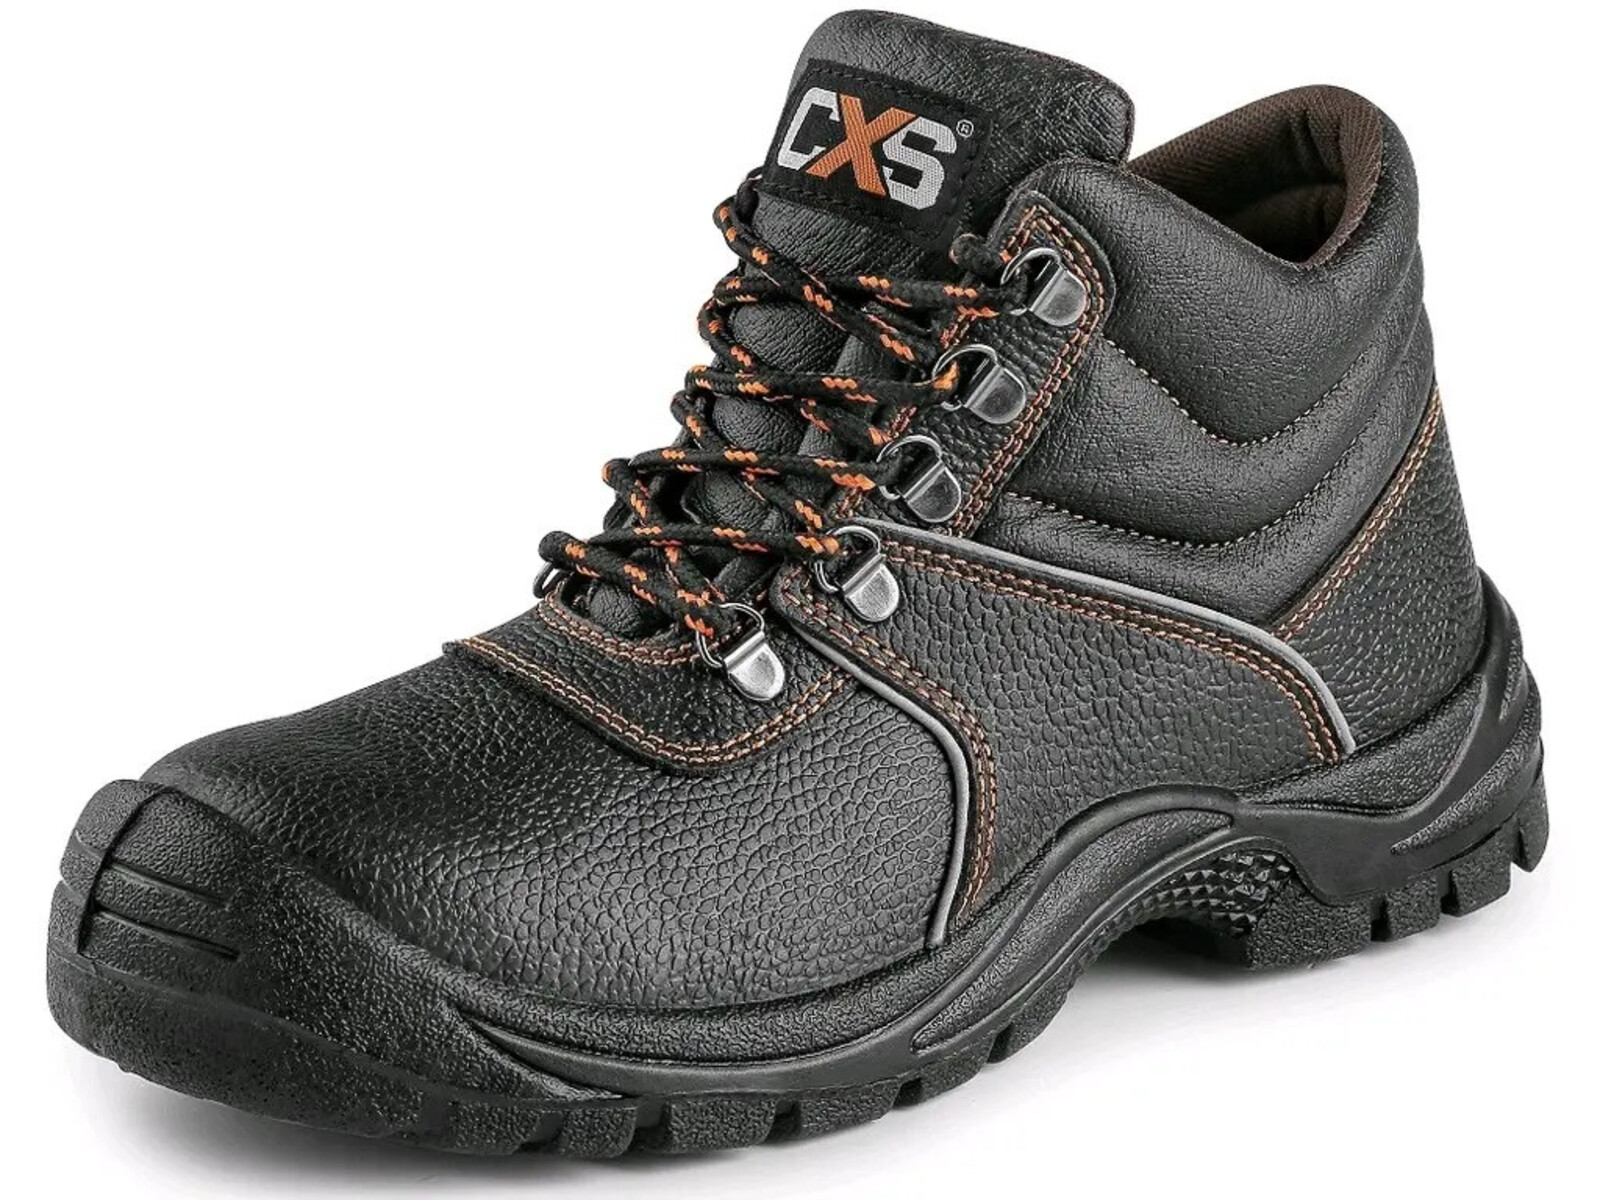 Bezpečnostná členková obuv CXS Stone Marble S2 SRC - veľkosť: 44, farba: čierna/oranžová